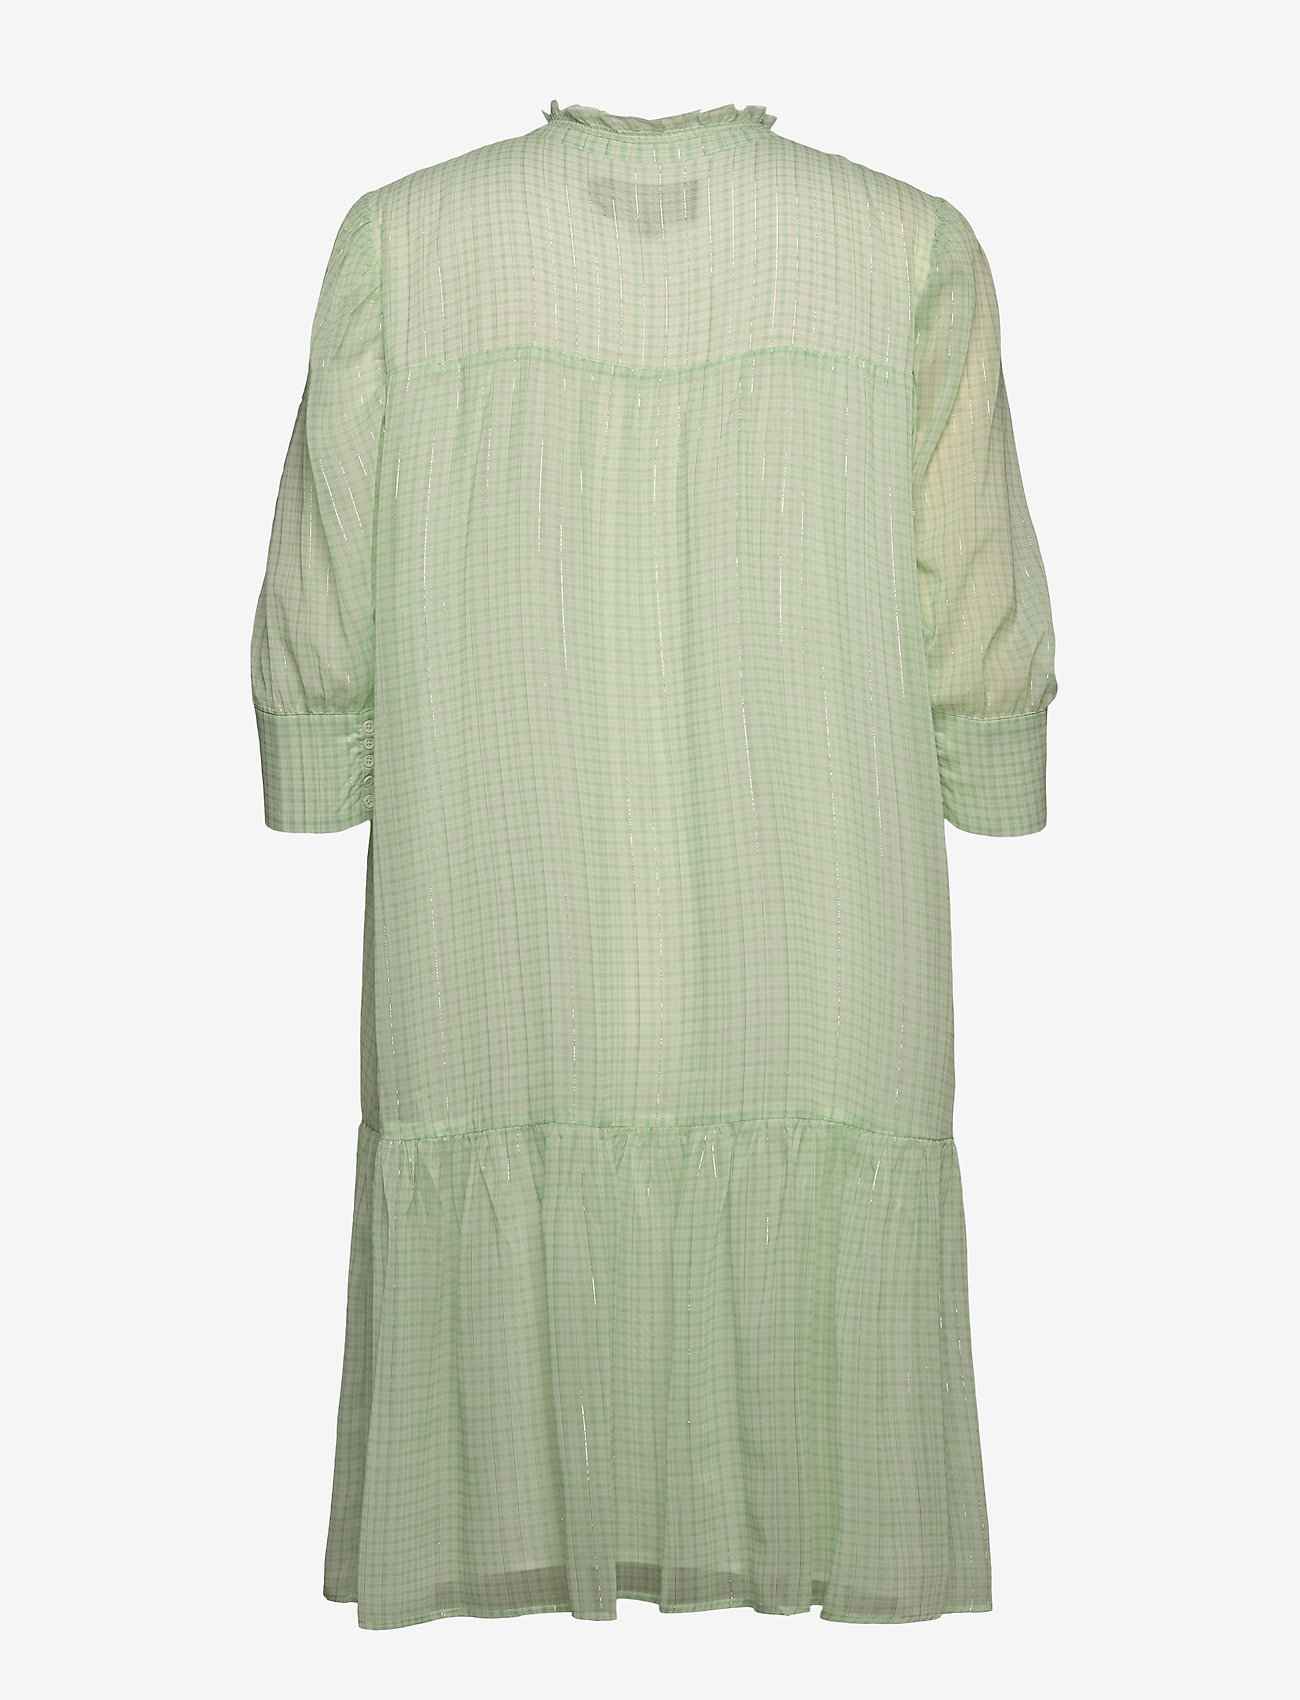 Birgitte Herskind - Liva Dress - summer dresses - light green checks - 1